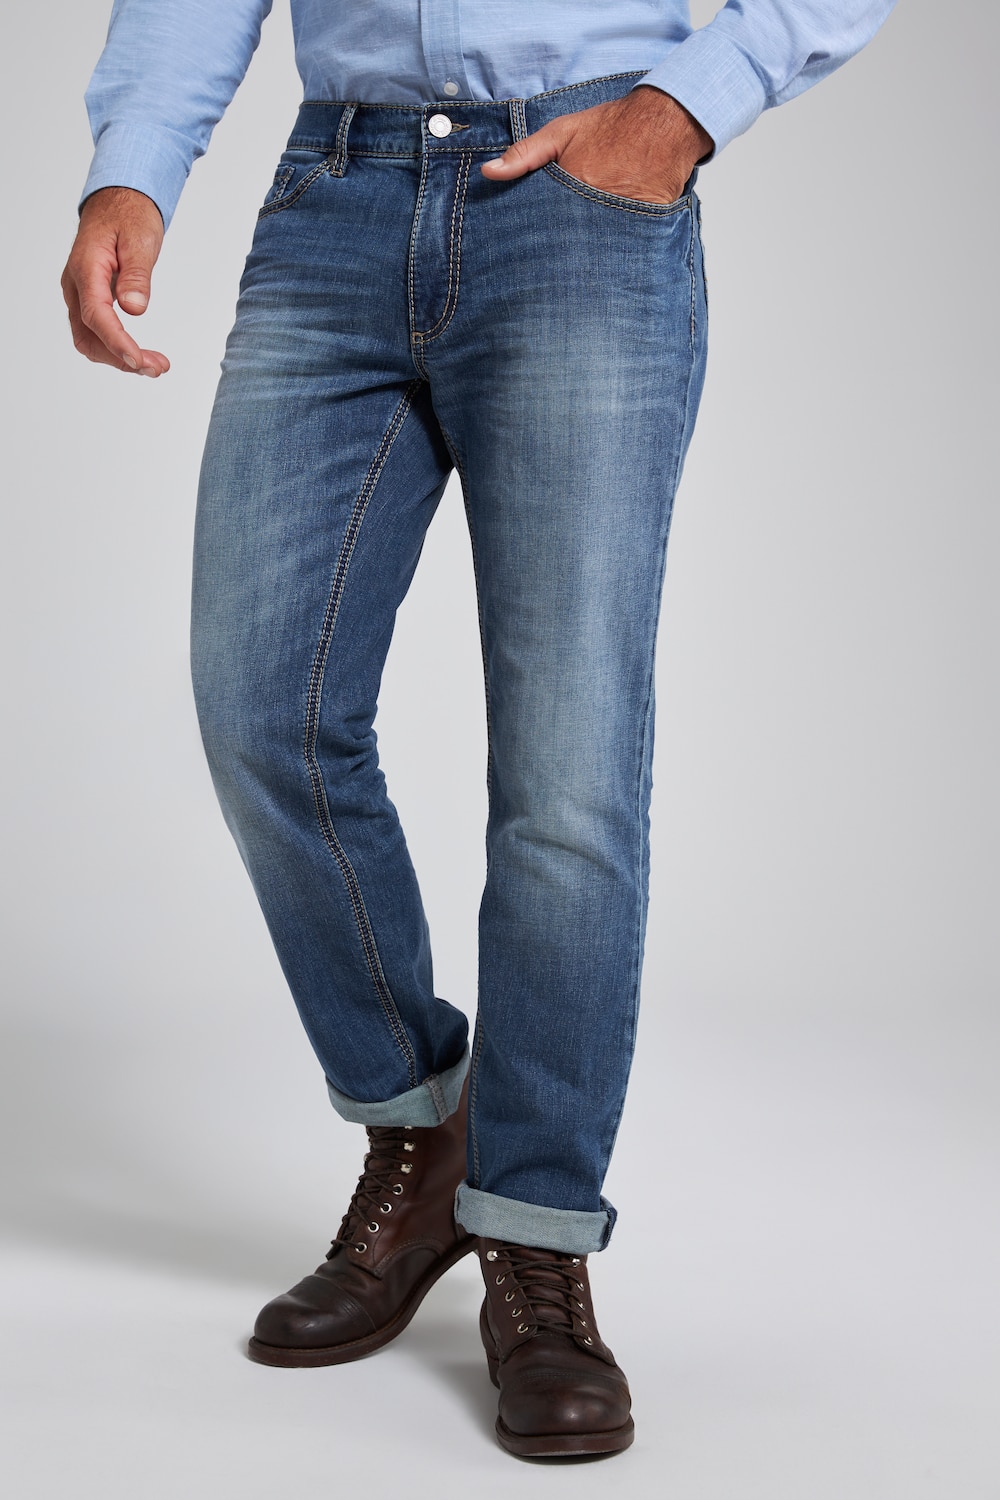 Große Größen Jeans, Herren, grau, Größe: 58, Baumwolle, JP1880 von JP1880